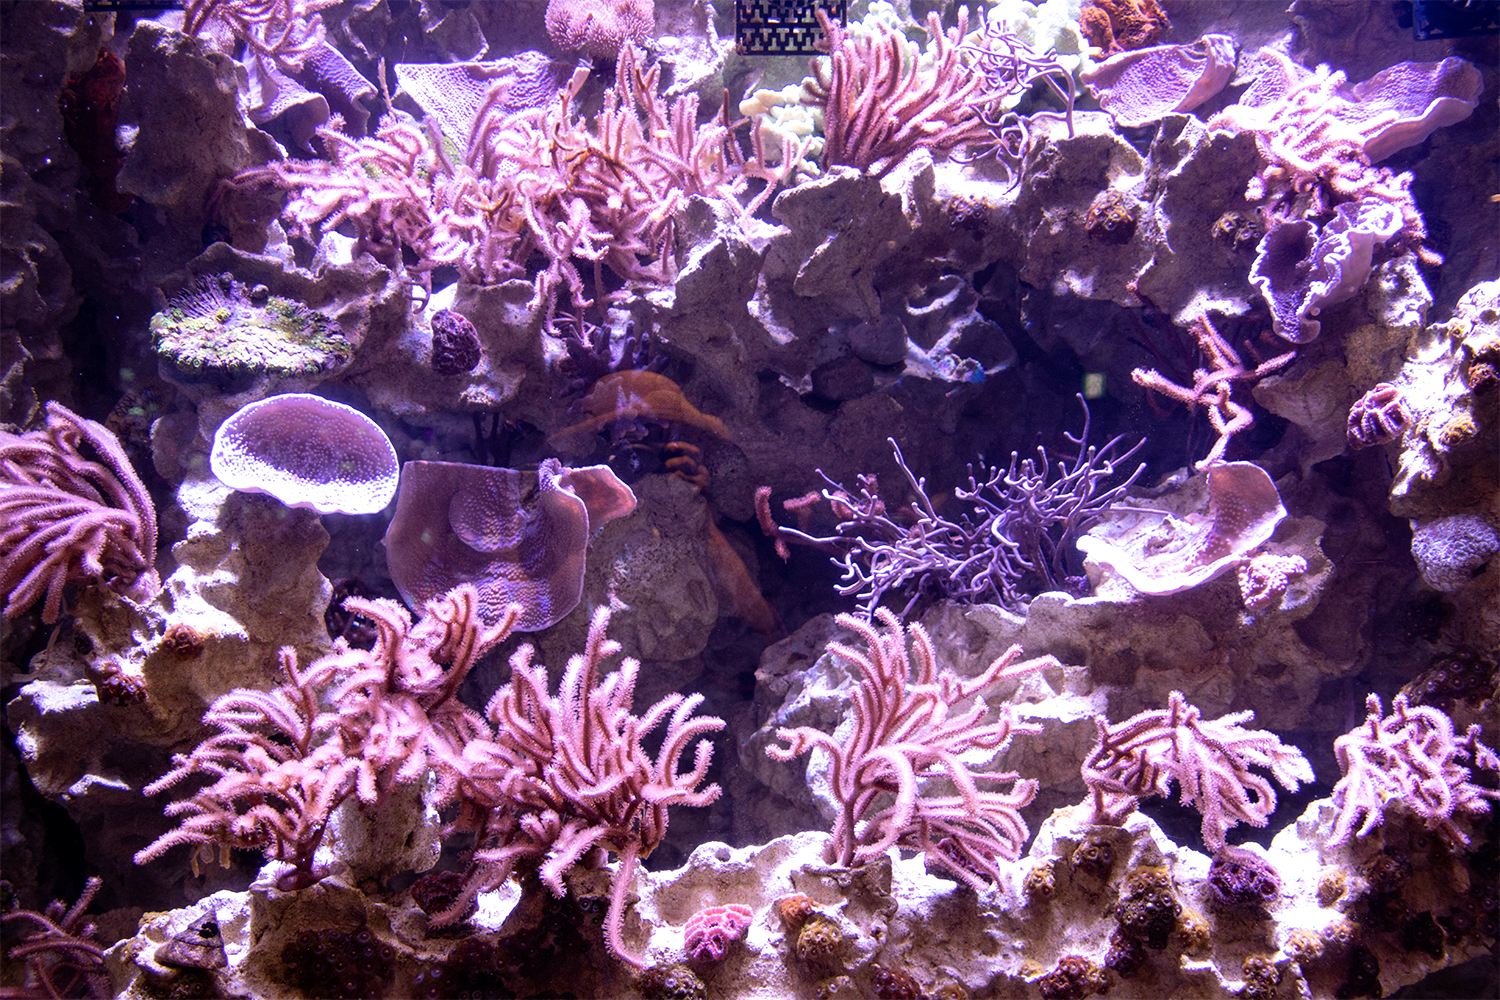 綺麗なピンク色をした珊瑚とイソギンチャク